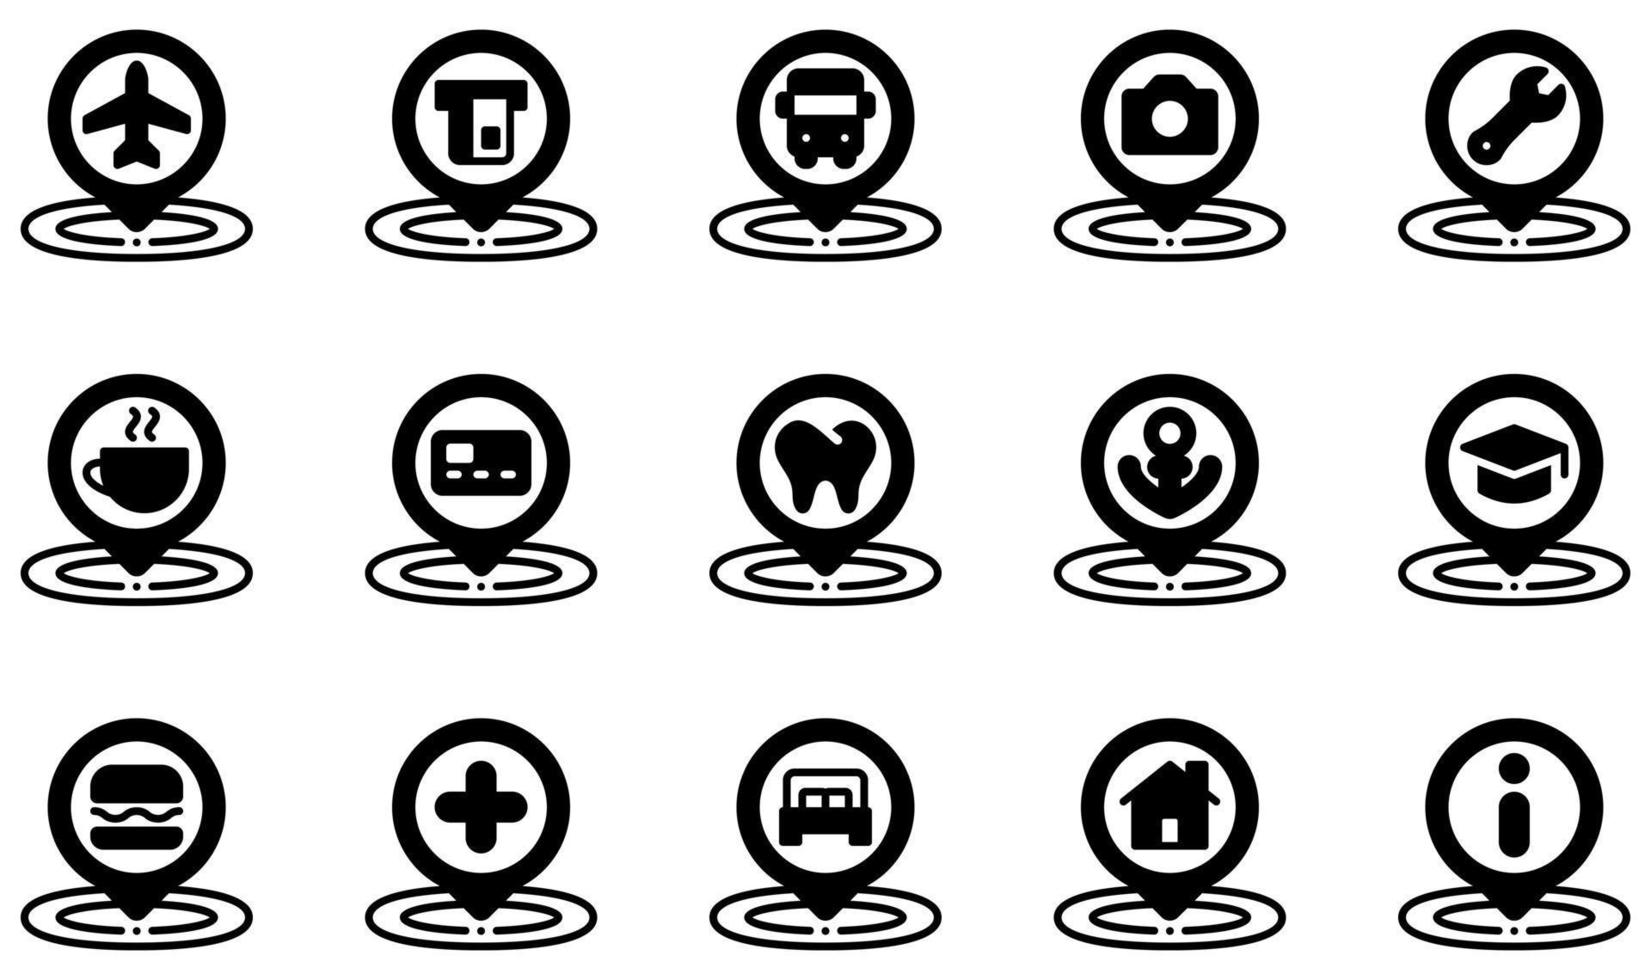 conjunto de iconos vectoriales relacionados con el marcador de posición. contiene íconos como aeropuerto, cajero automático, parada de autobús, café, dentista, educación y más. vector